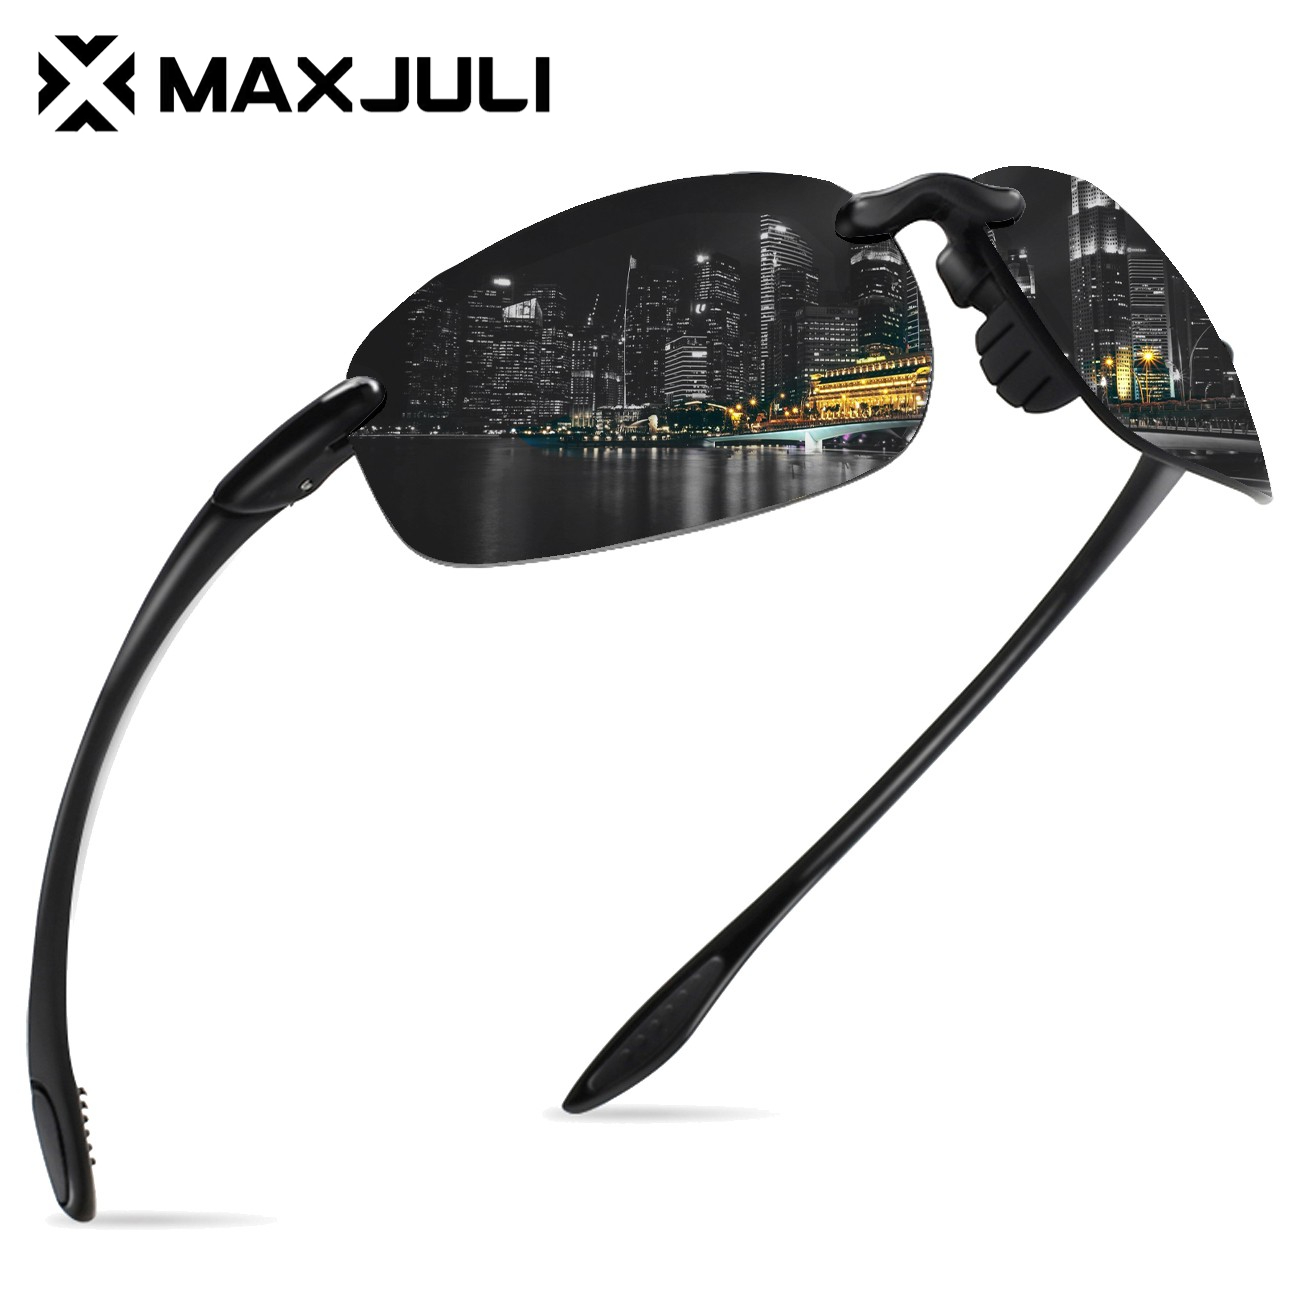 Zugatti Mirrored, Polarized, UV Protection Sport Sunglasses (Free